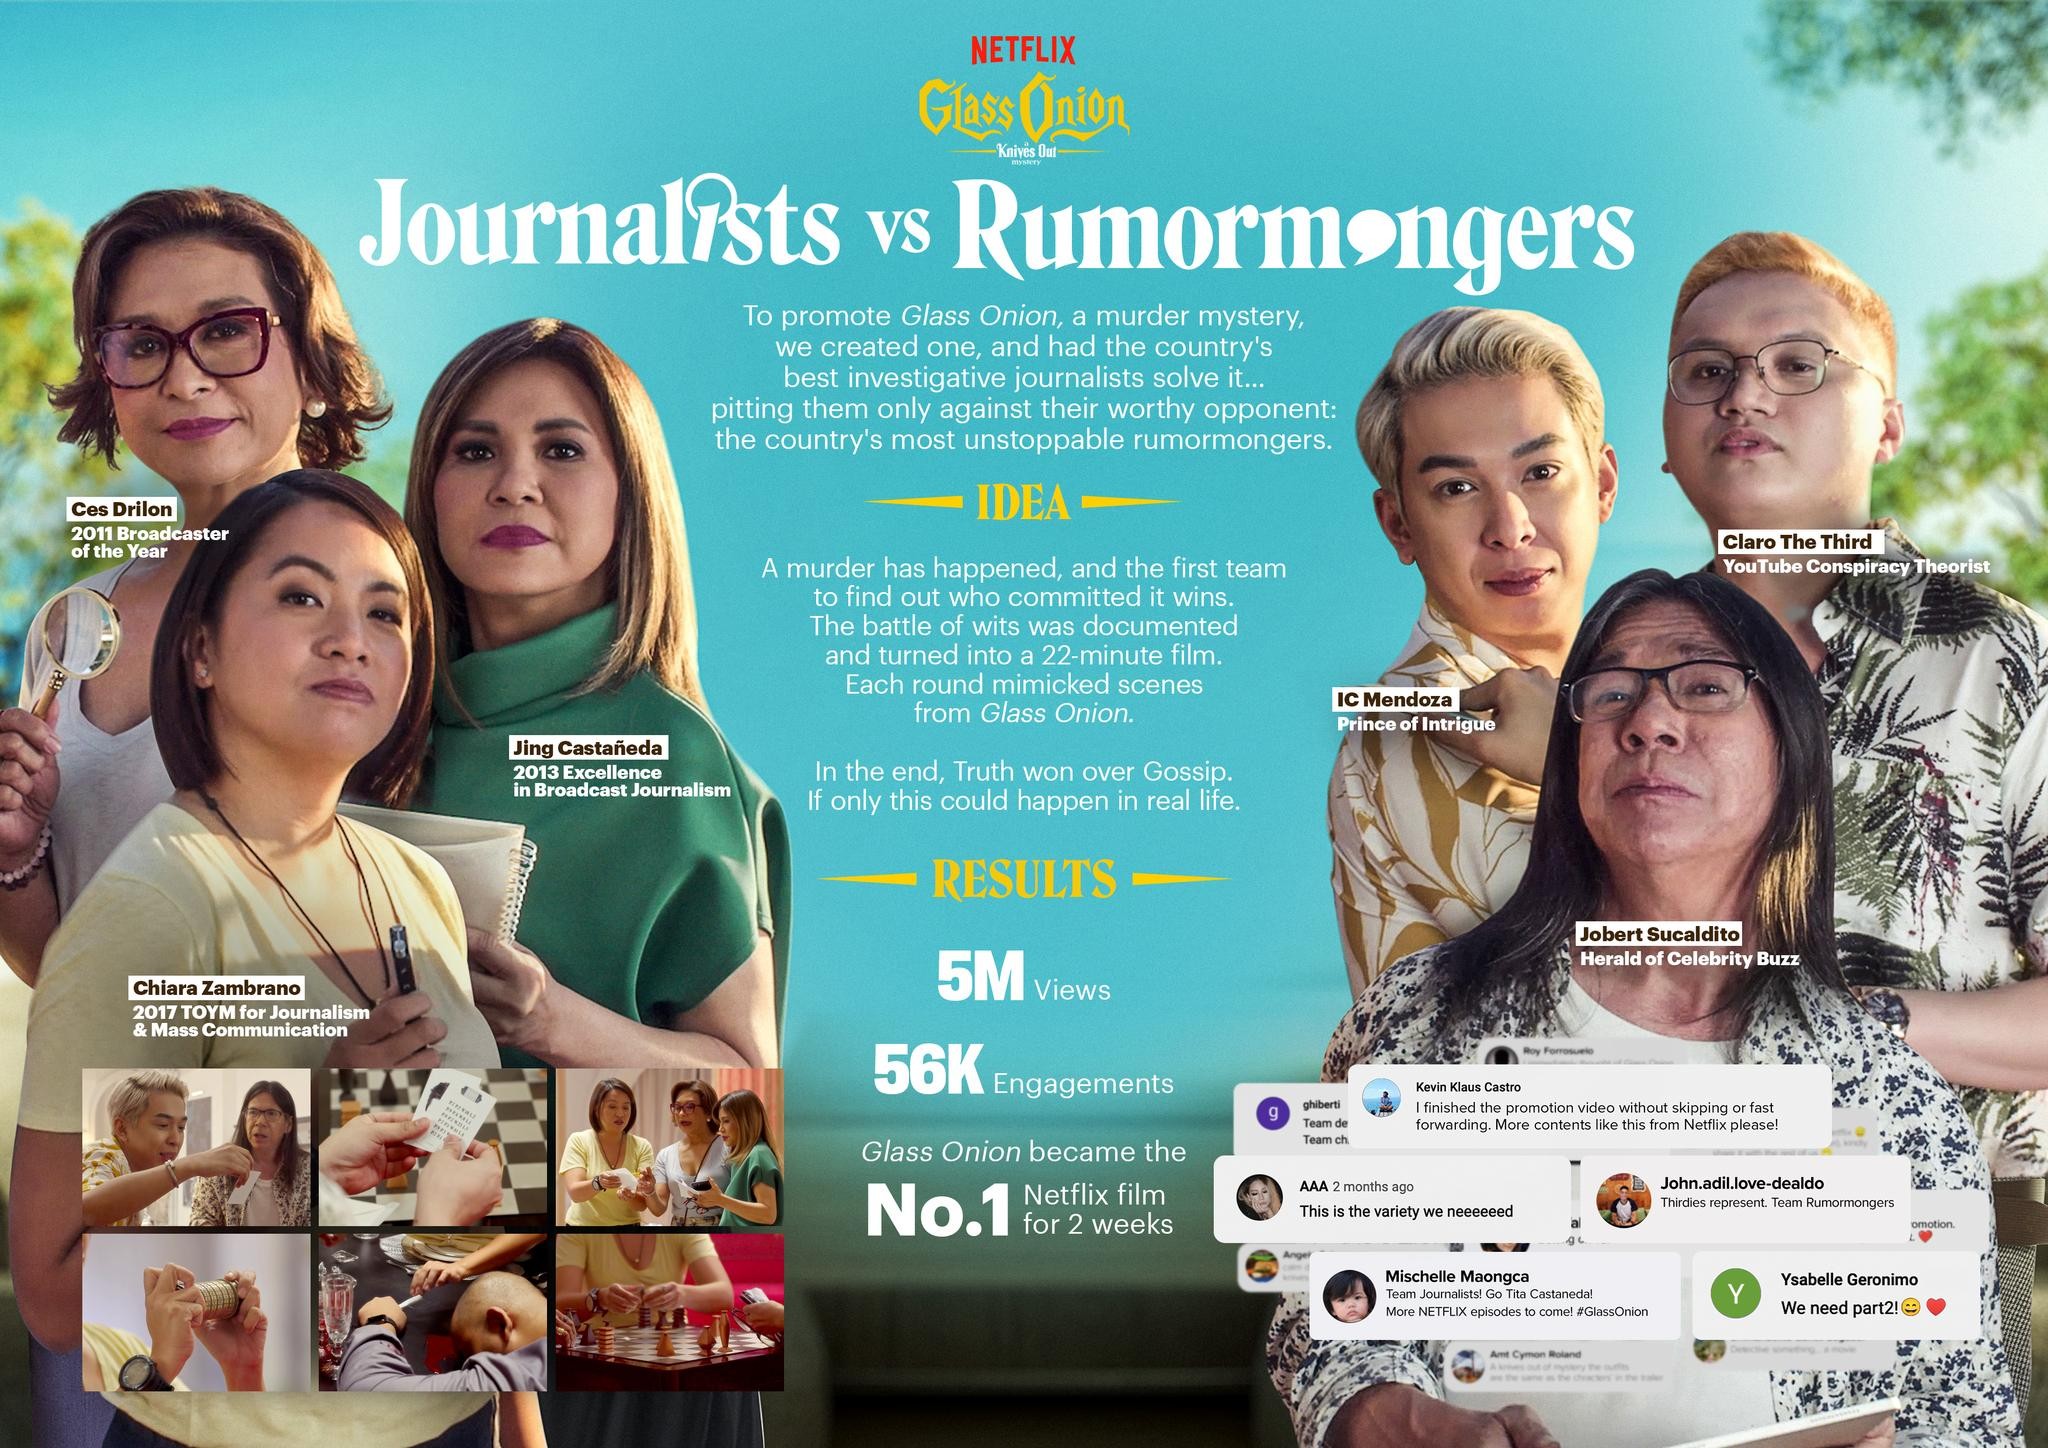 Journalists vs. Rumormongers